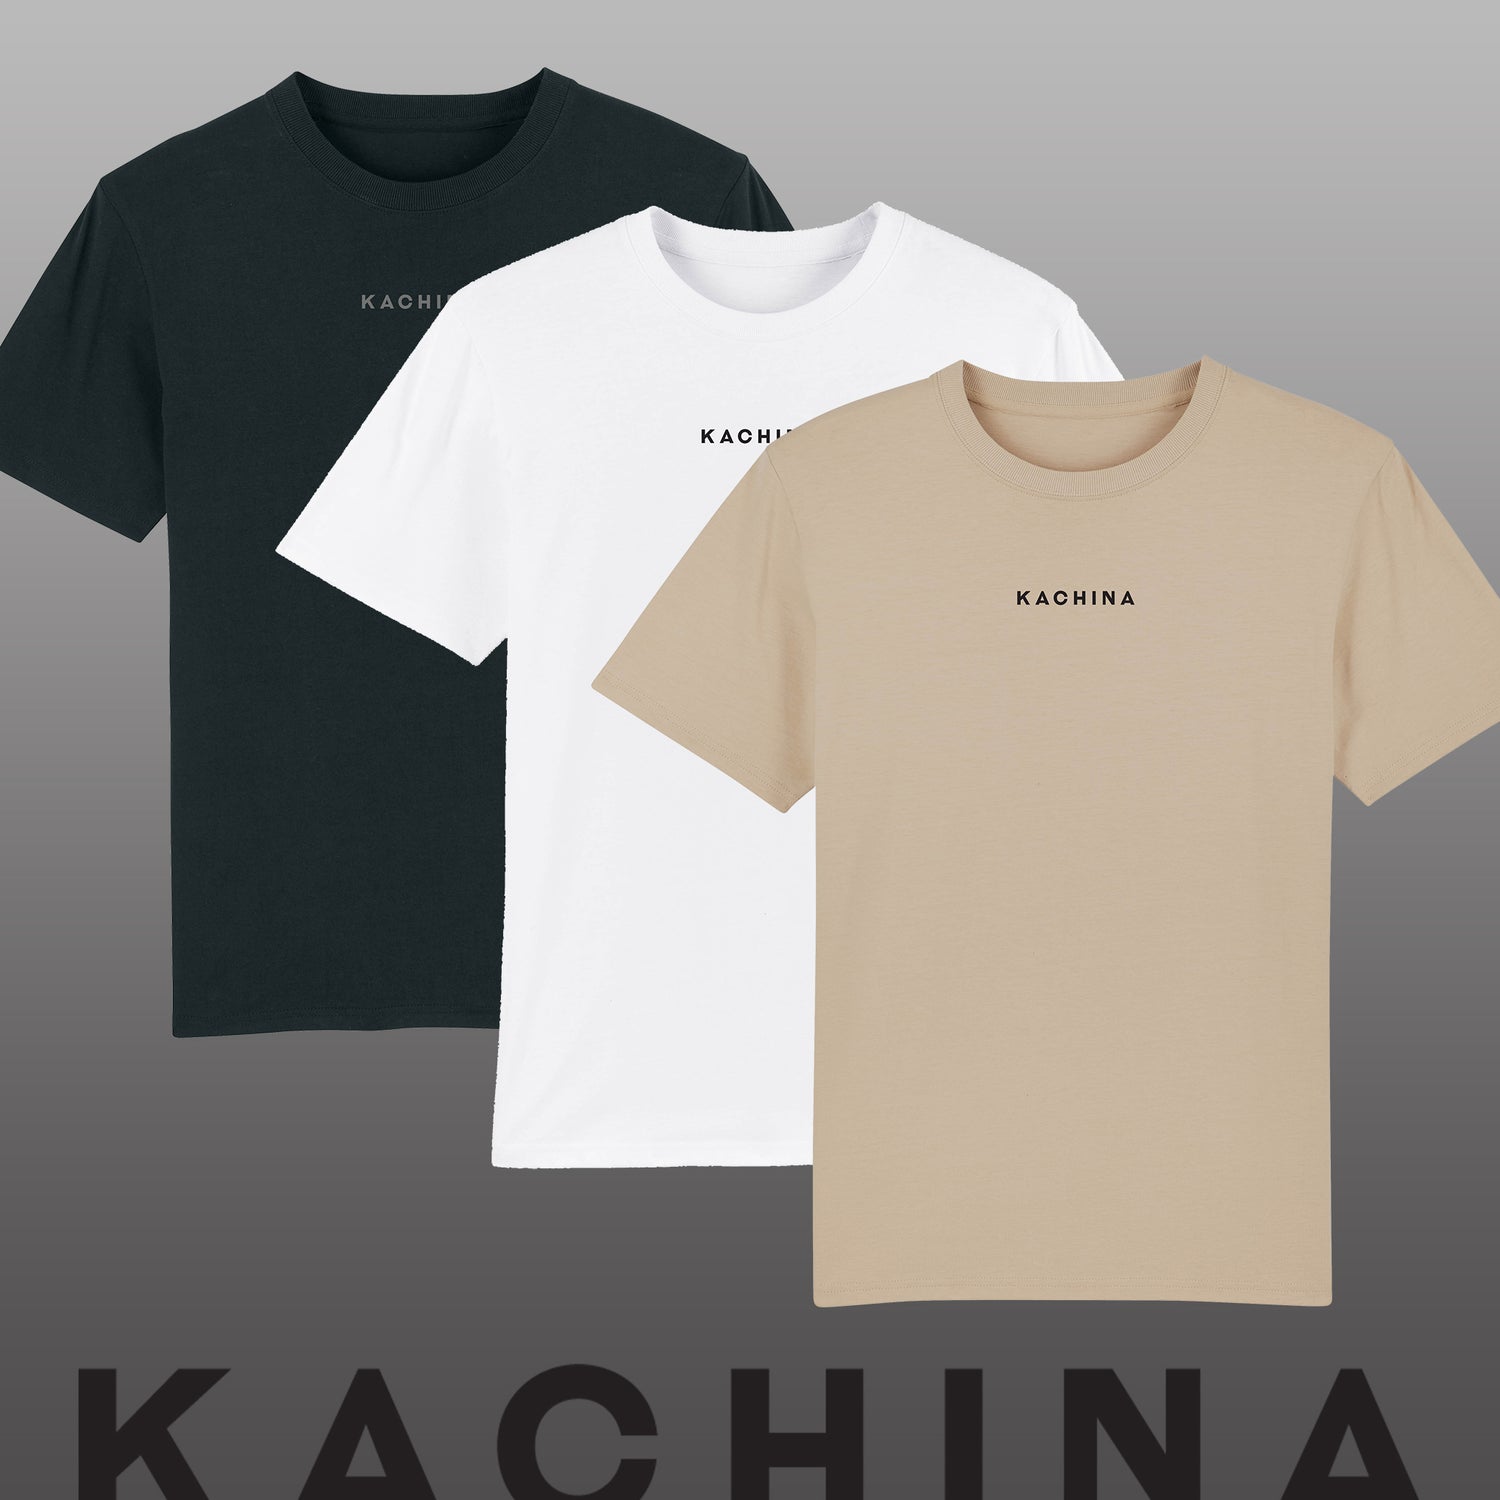 Kachina Organic Surf Clothing – kachinaclothing